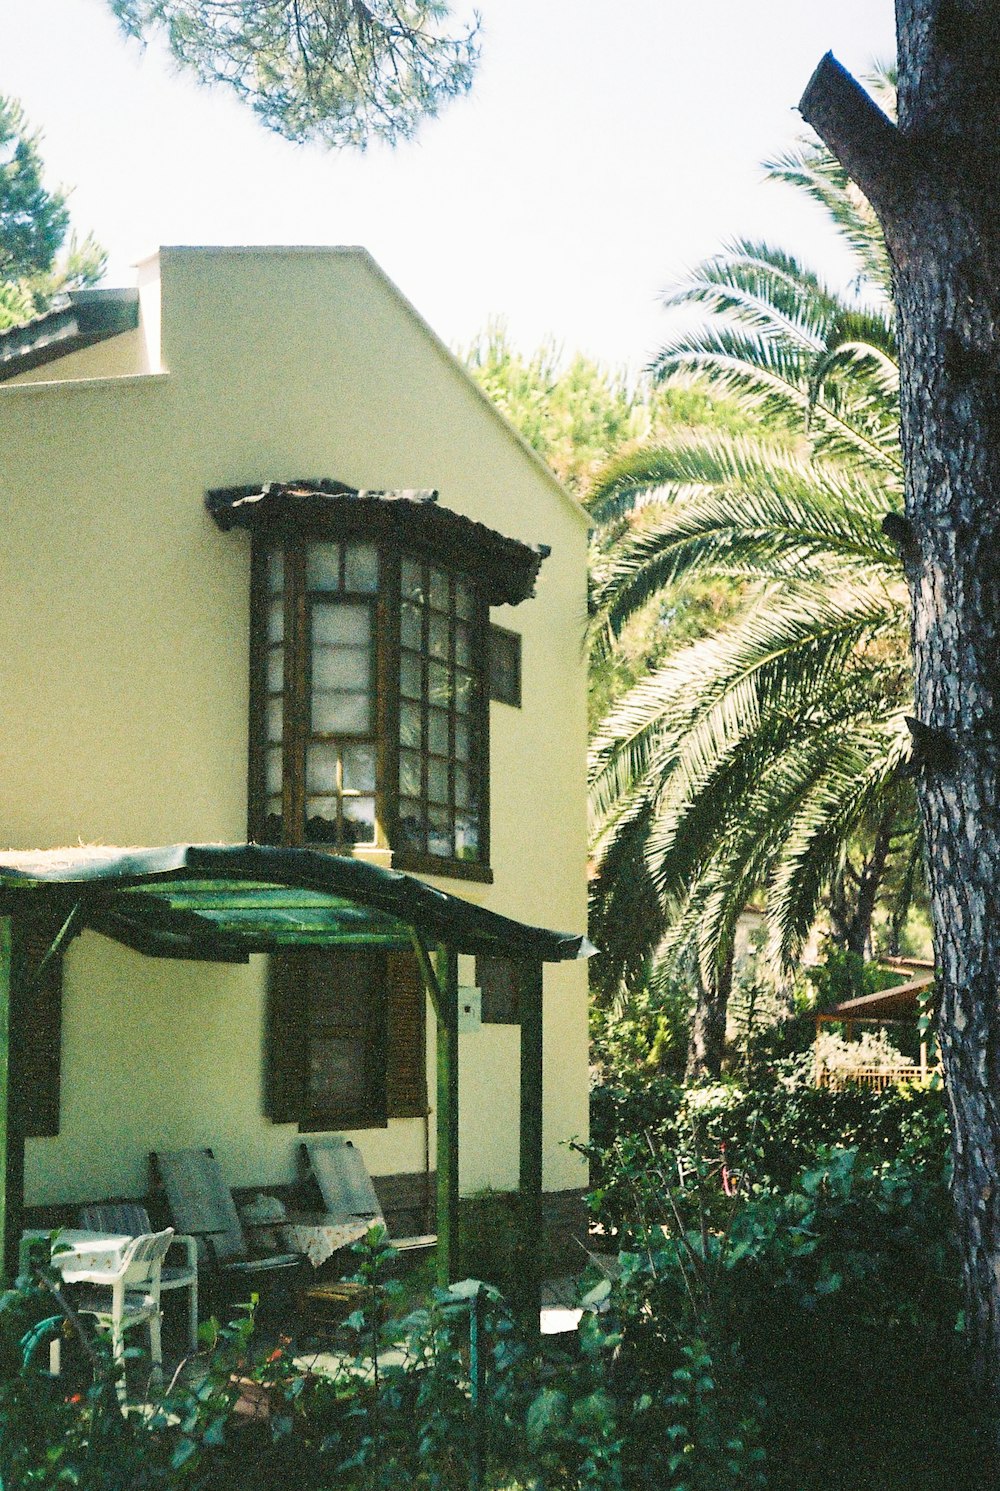 a house with a palm tree